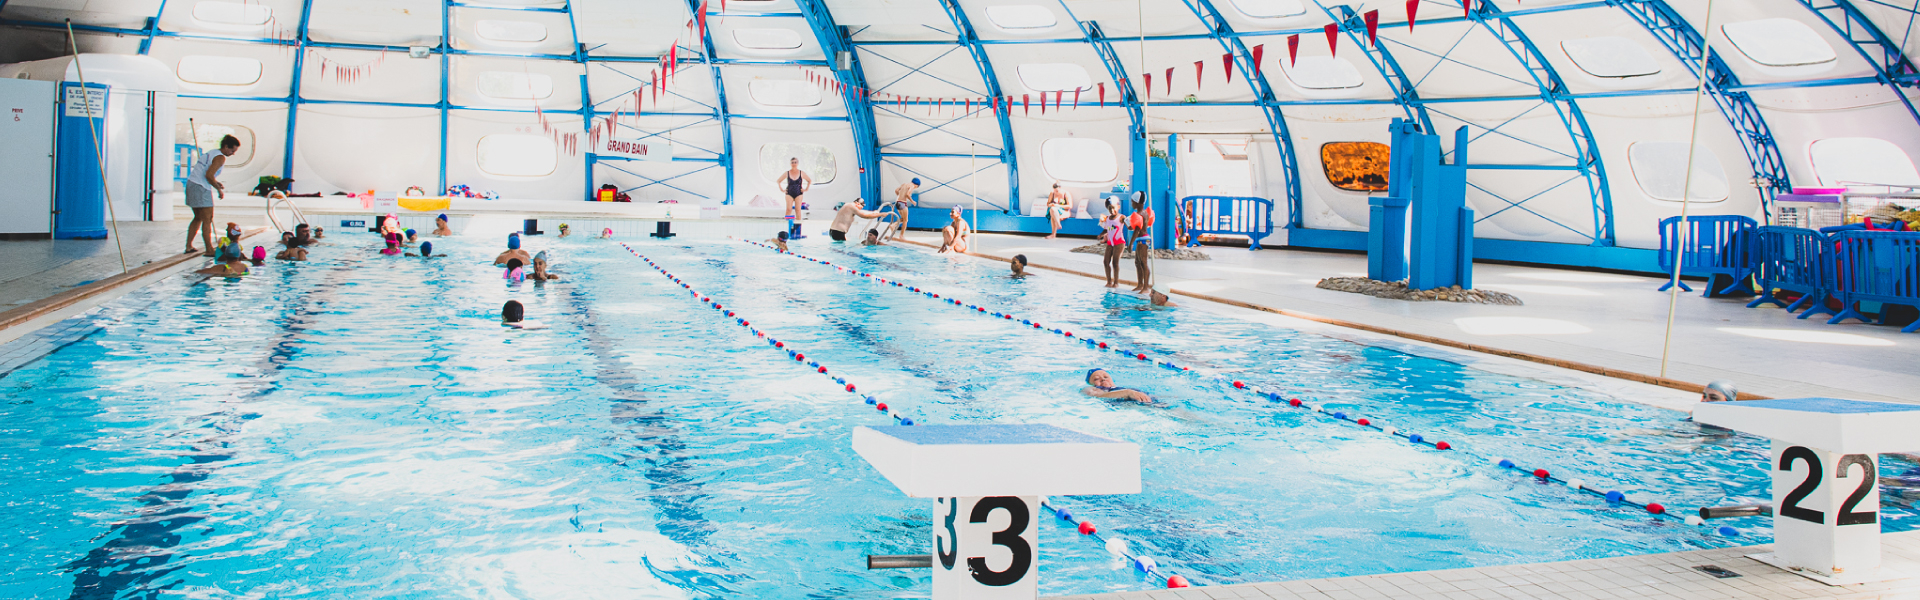 Les piscines marseillaises désormais gratuites pour les moins de 12 ans 